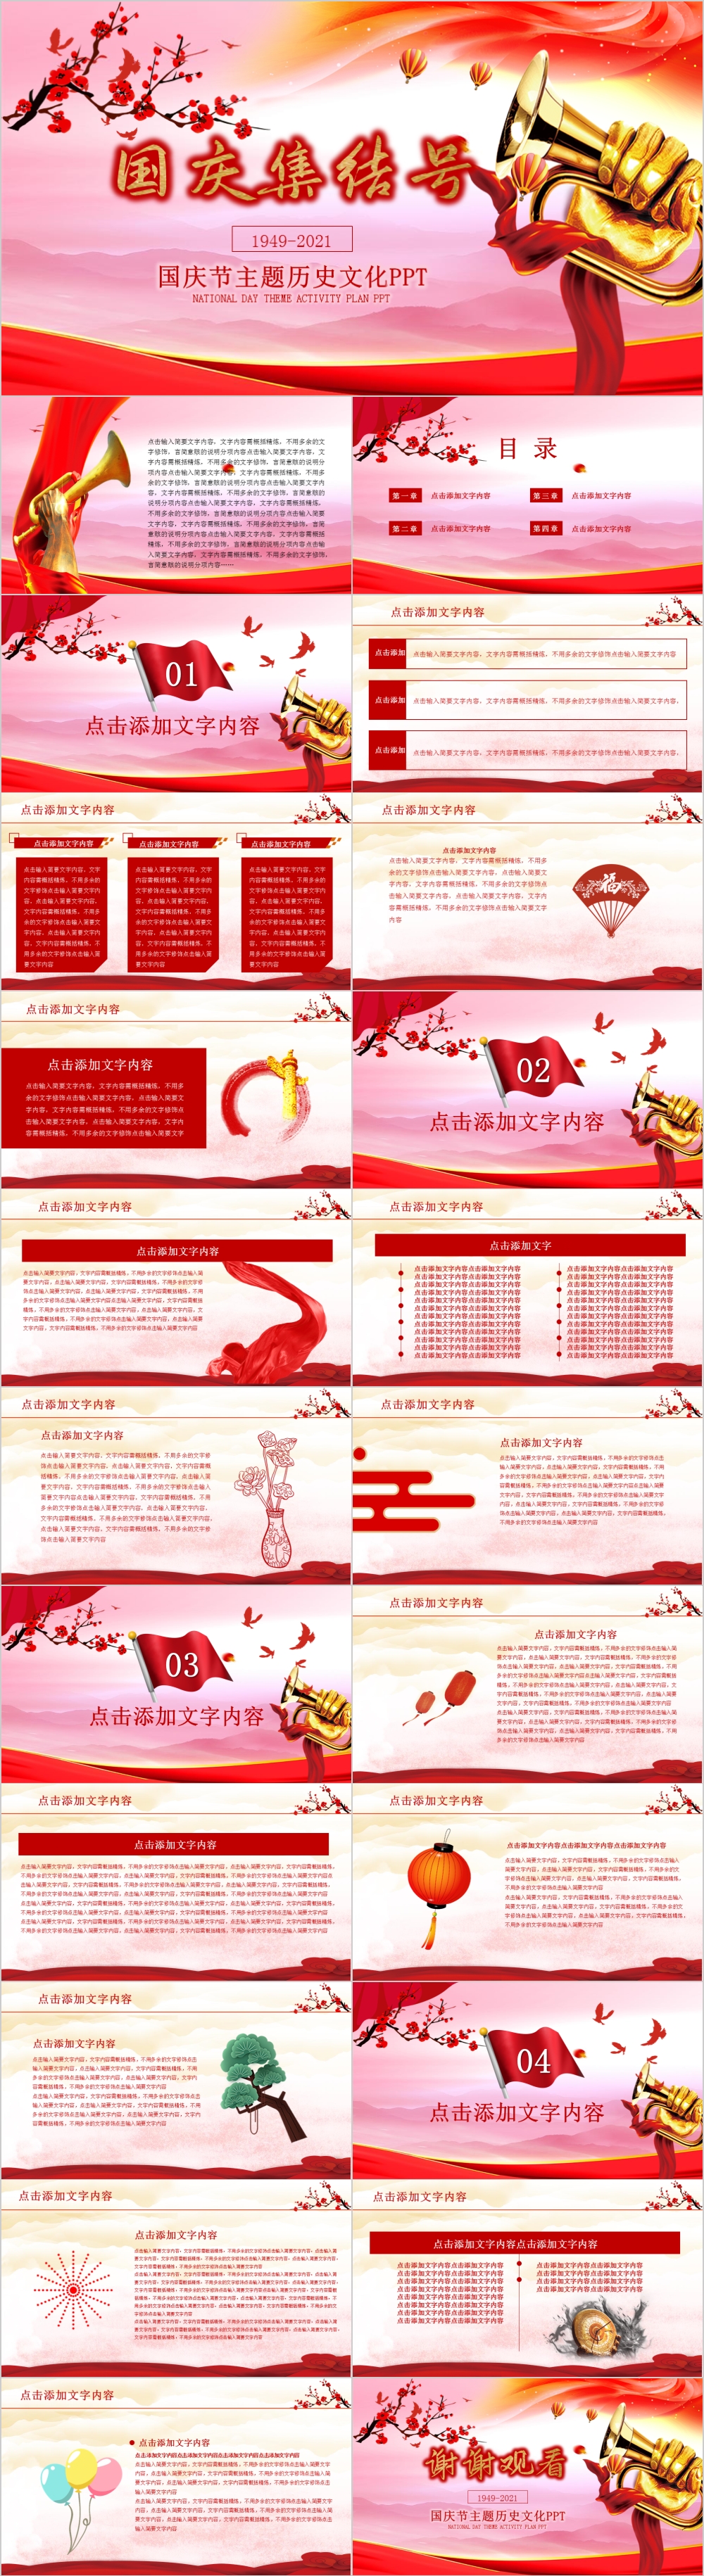 喜庆国庆集结号主题历史文化PPT模板